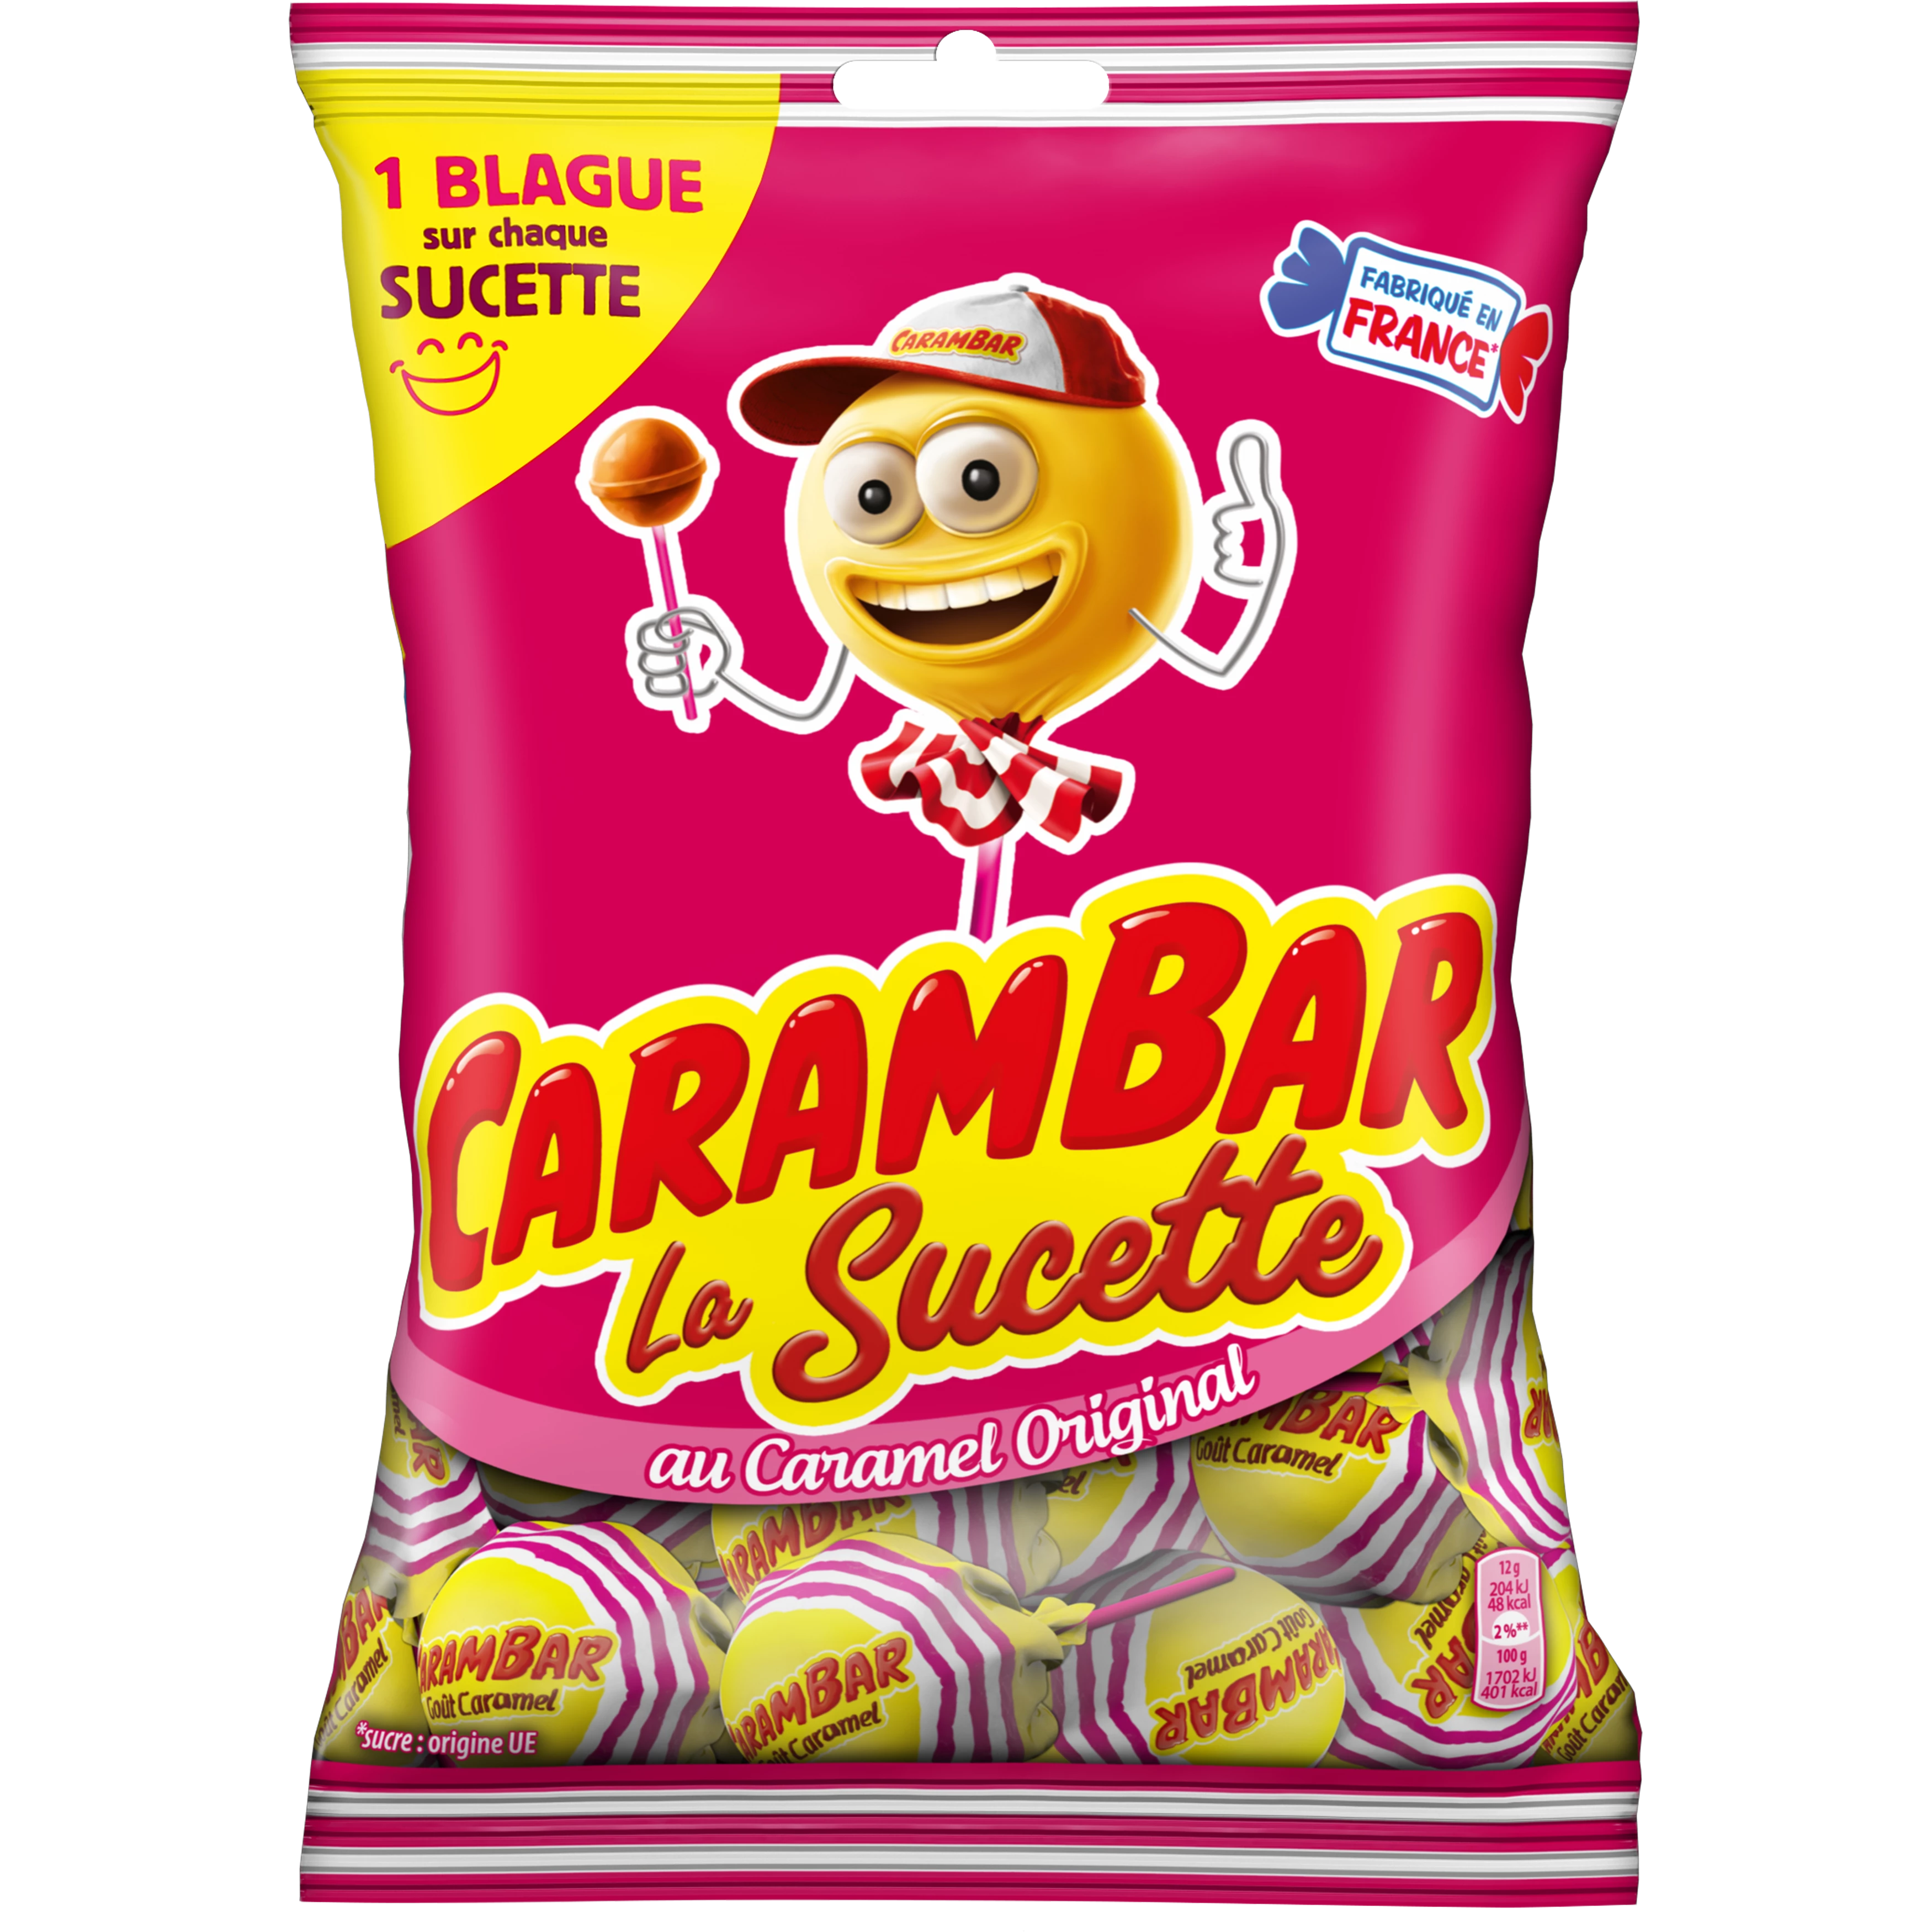 Carambar-karamellolly's; 156g - CARAMBAR